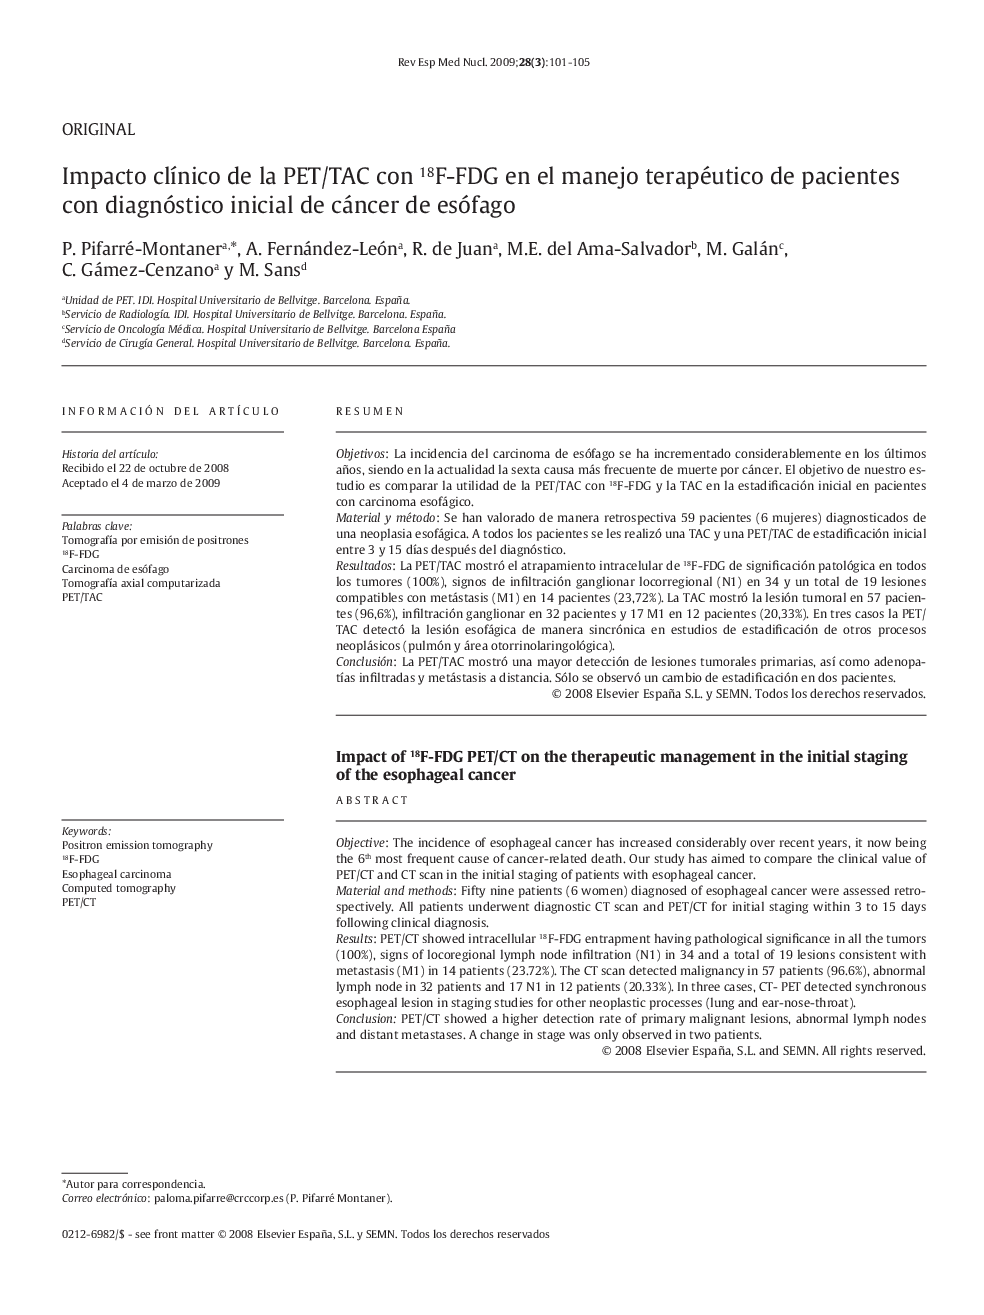 Impacto clínico de la PET/TAC con 18F-FDG en el manejo terapéutico de pacientes con diagnóstico inicial de cáncer de esófago